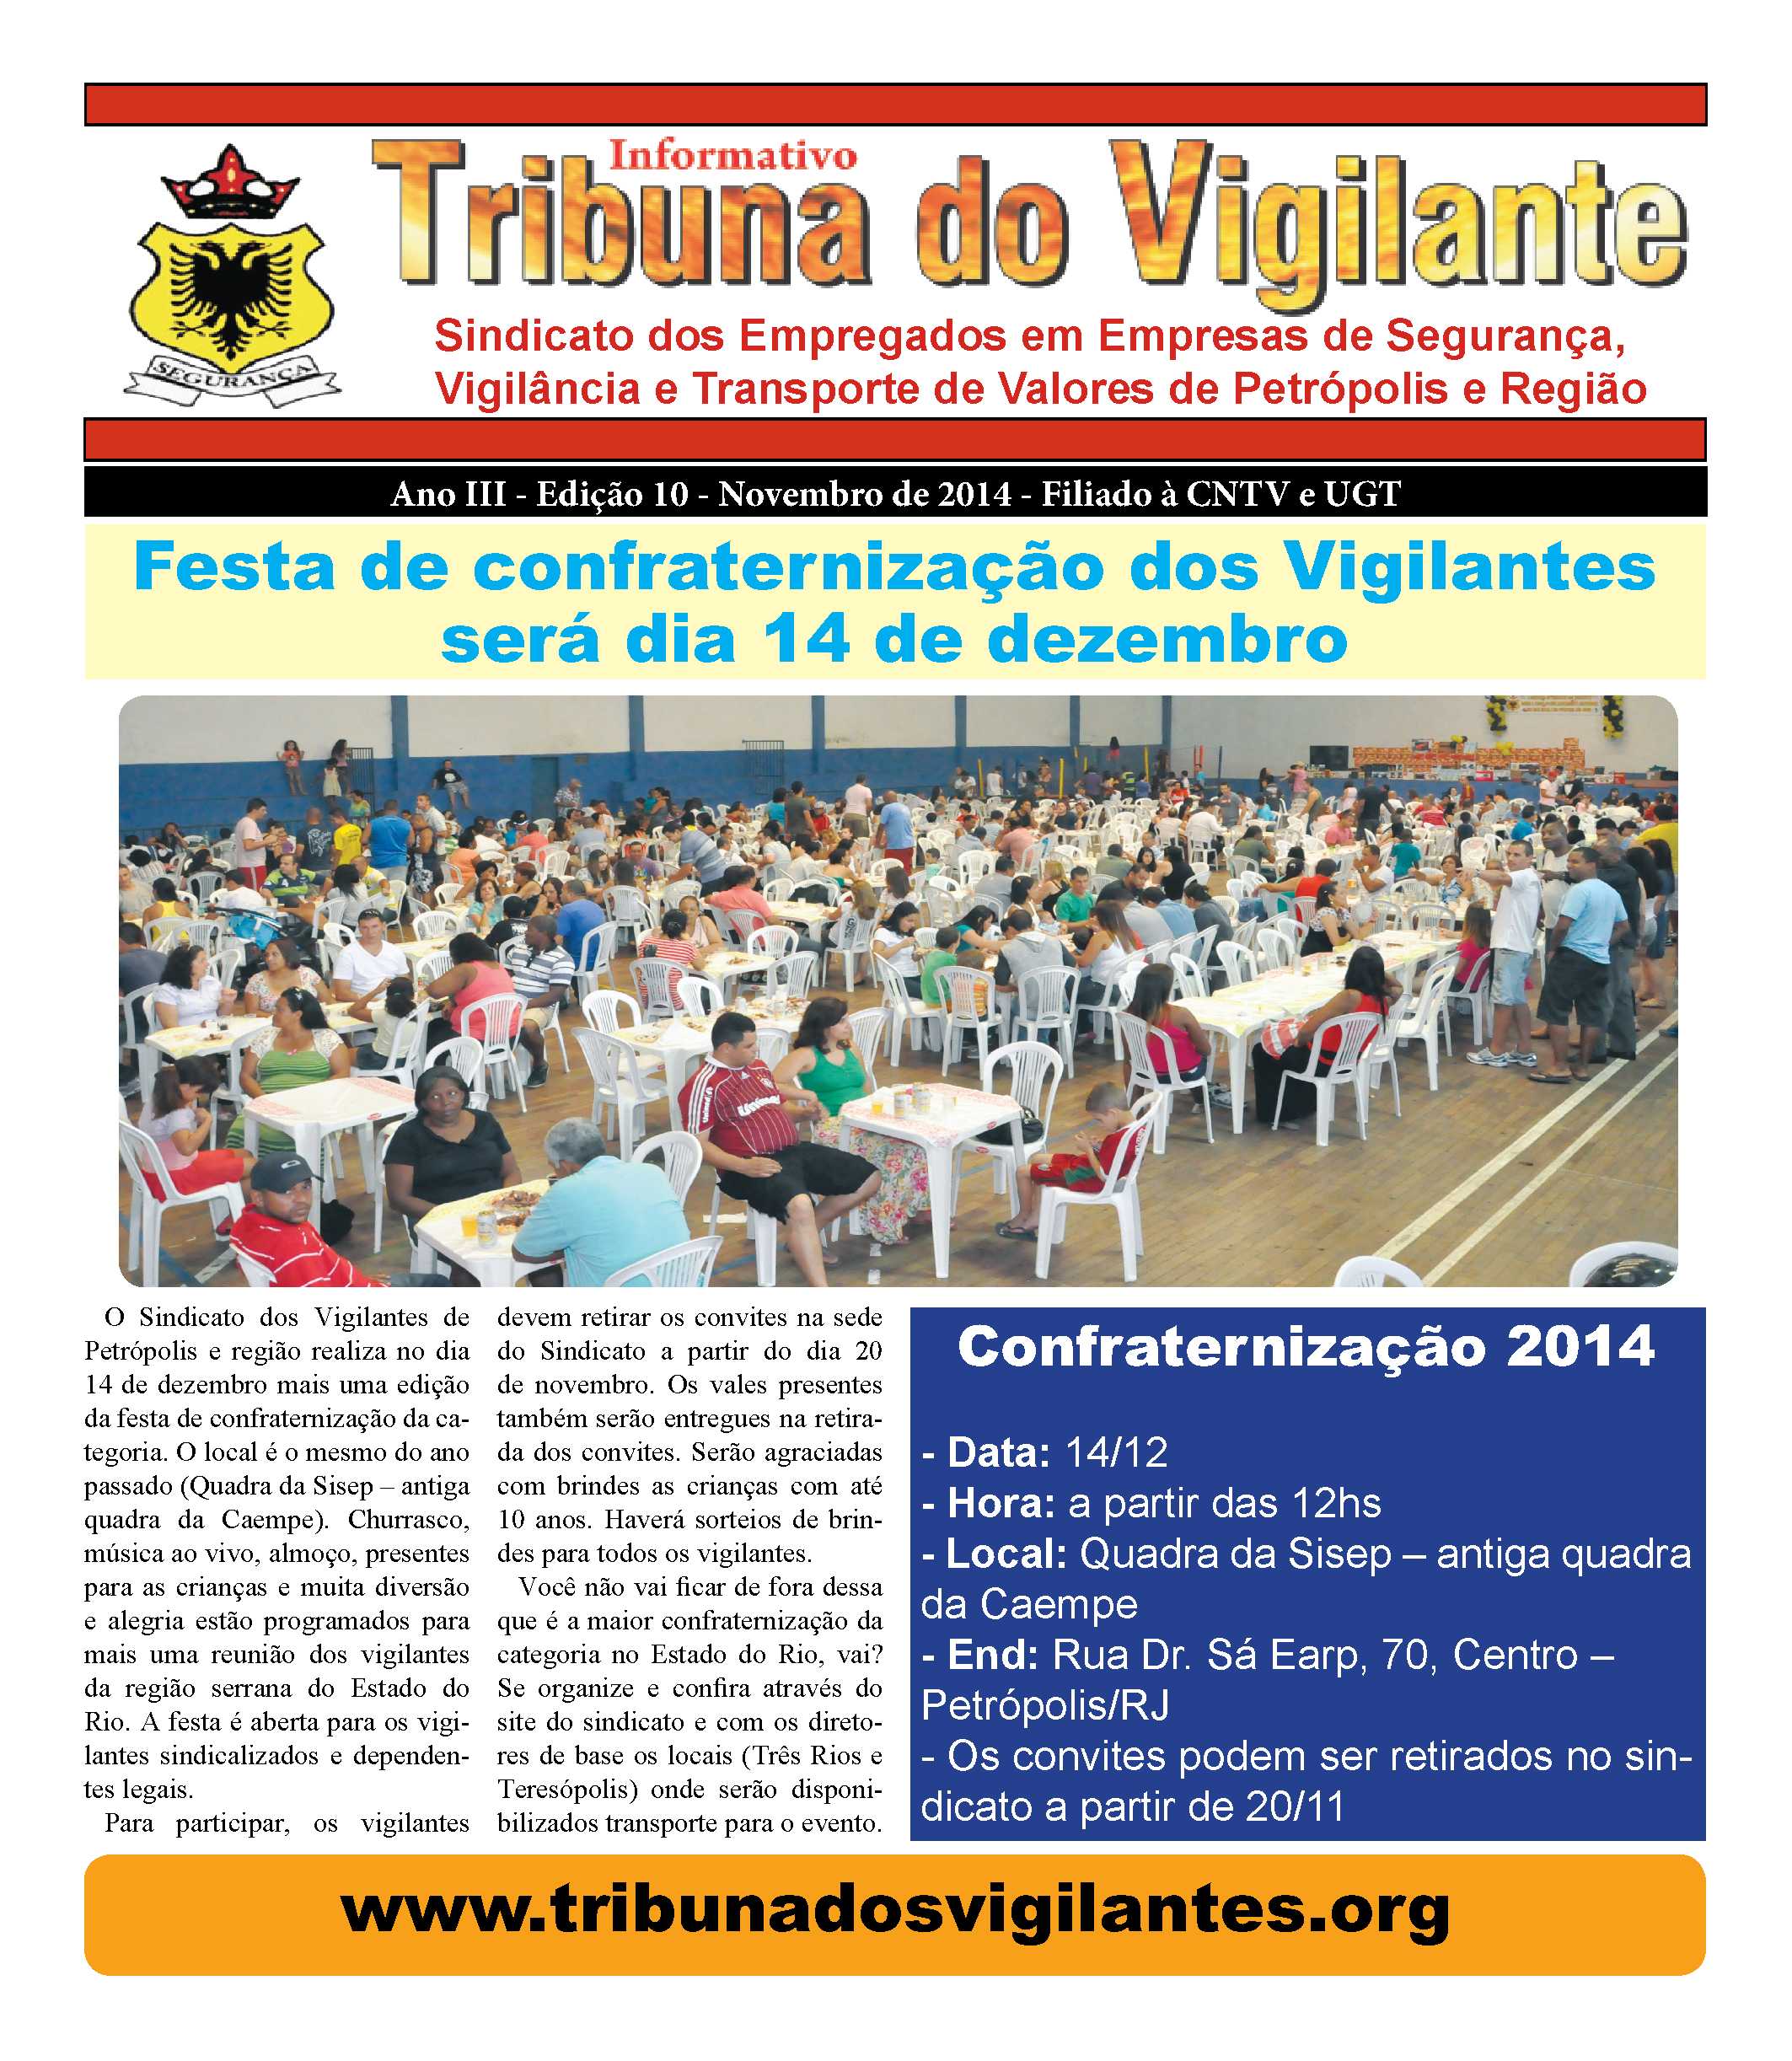 Informativo Tribuna dos Vigilantes - Petrópolis novembro de 2014